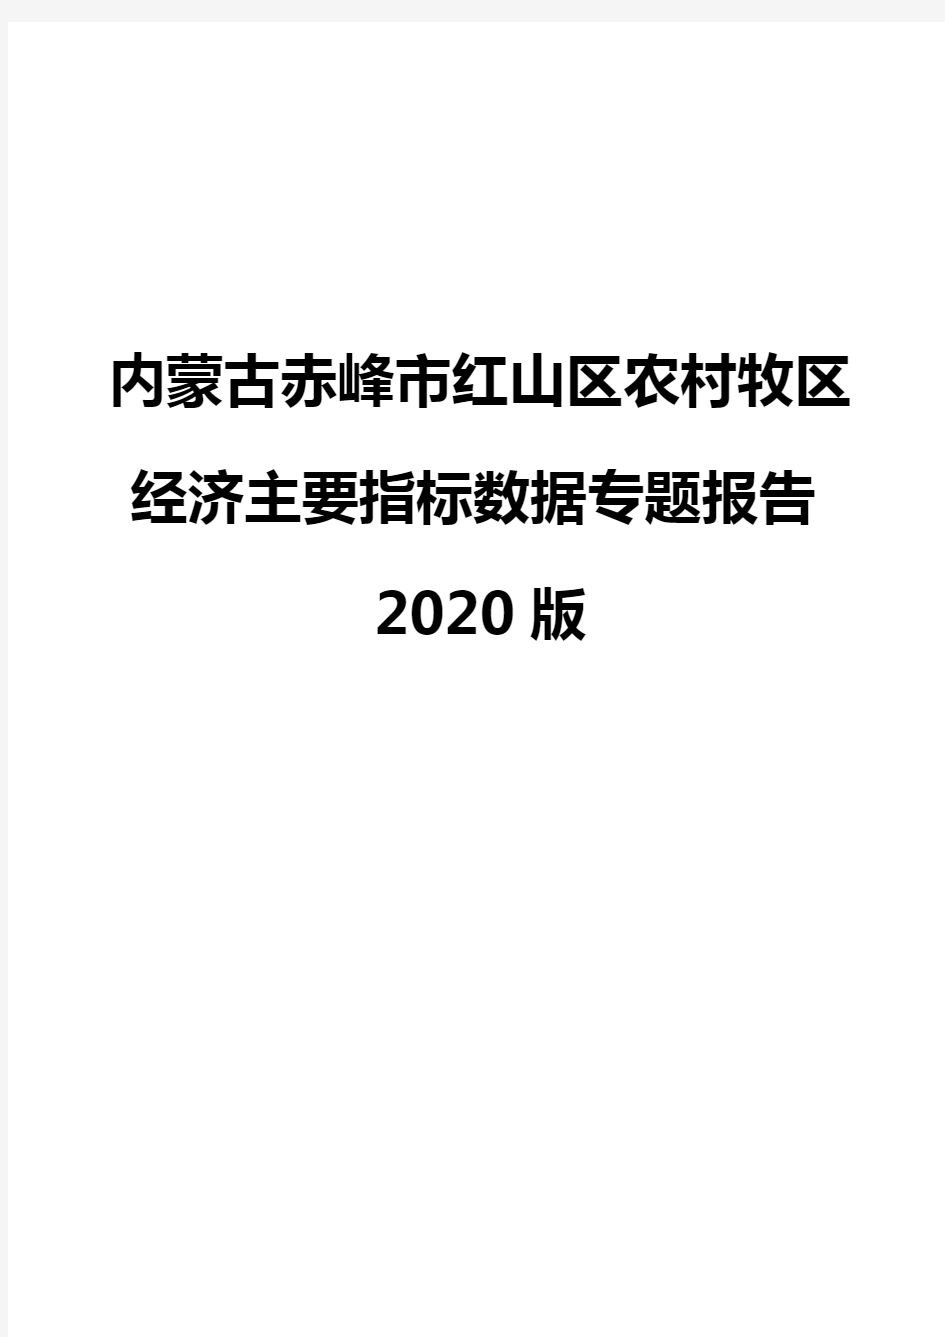 内蒙古赤峰市红山区农村牧区经济主要指标数据专题报告2020版